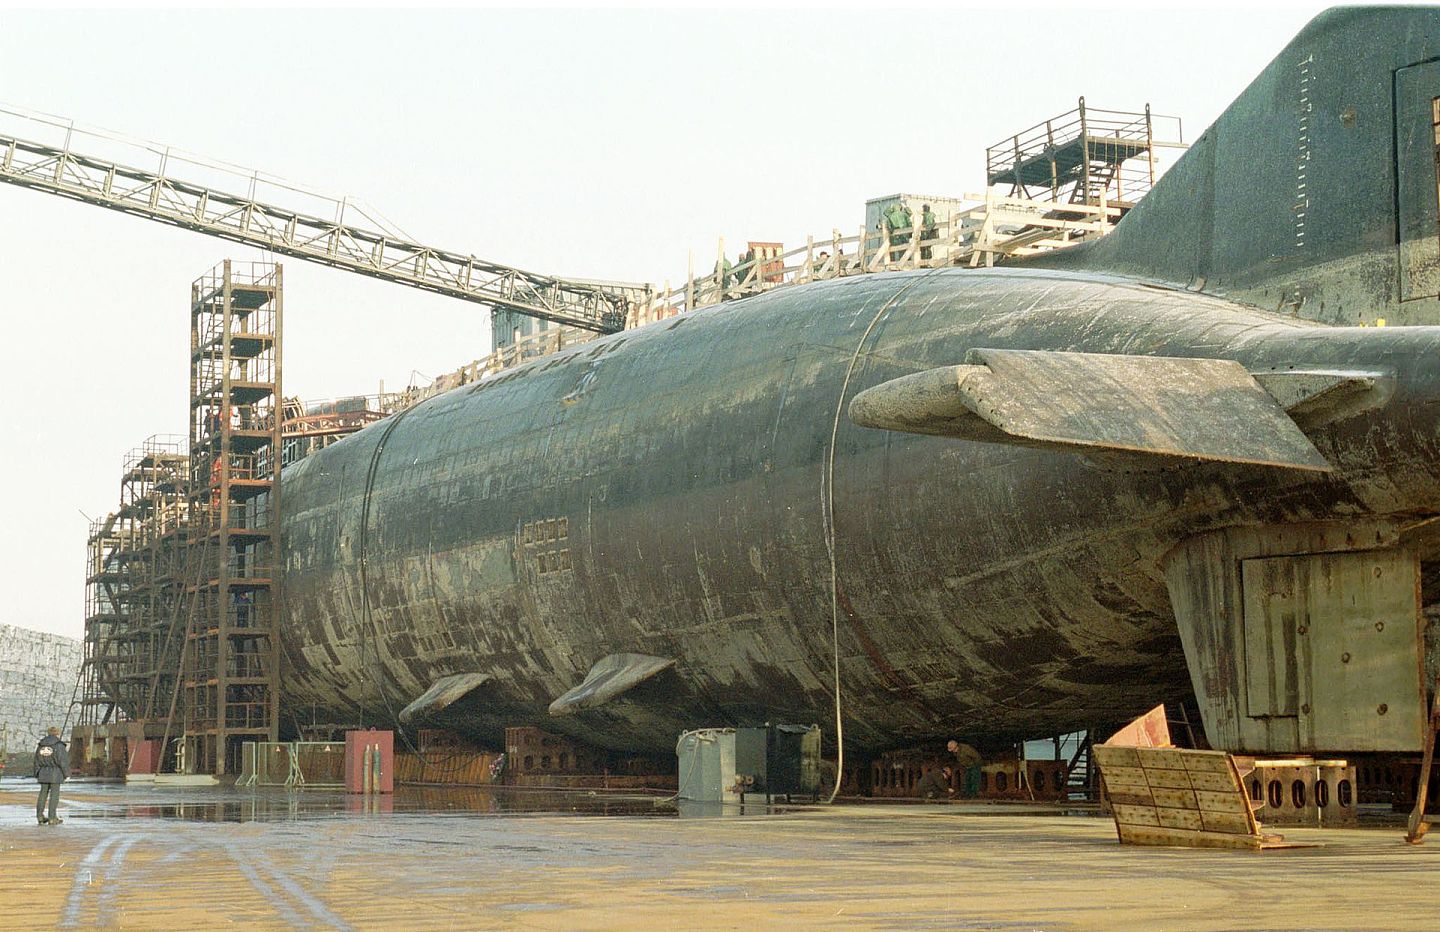 俄罗斯核潜艇体量依然庞大，但是设备比较老旧。2000年8月12日“库尔斯克”号核潜艇在巴伦支海参加军事演习时发生爆炸沉没。图为被打捞出水的“库尔斯克”号核潜艇。（VCG）